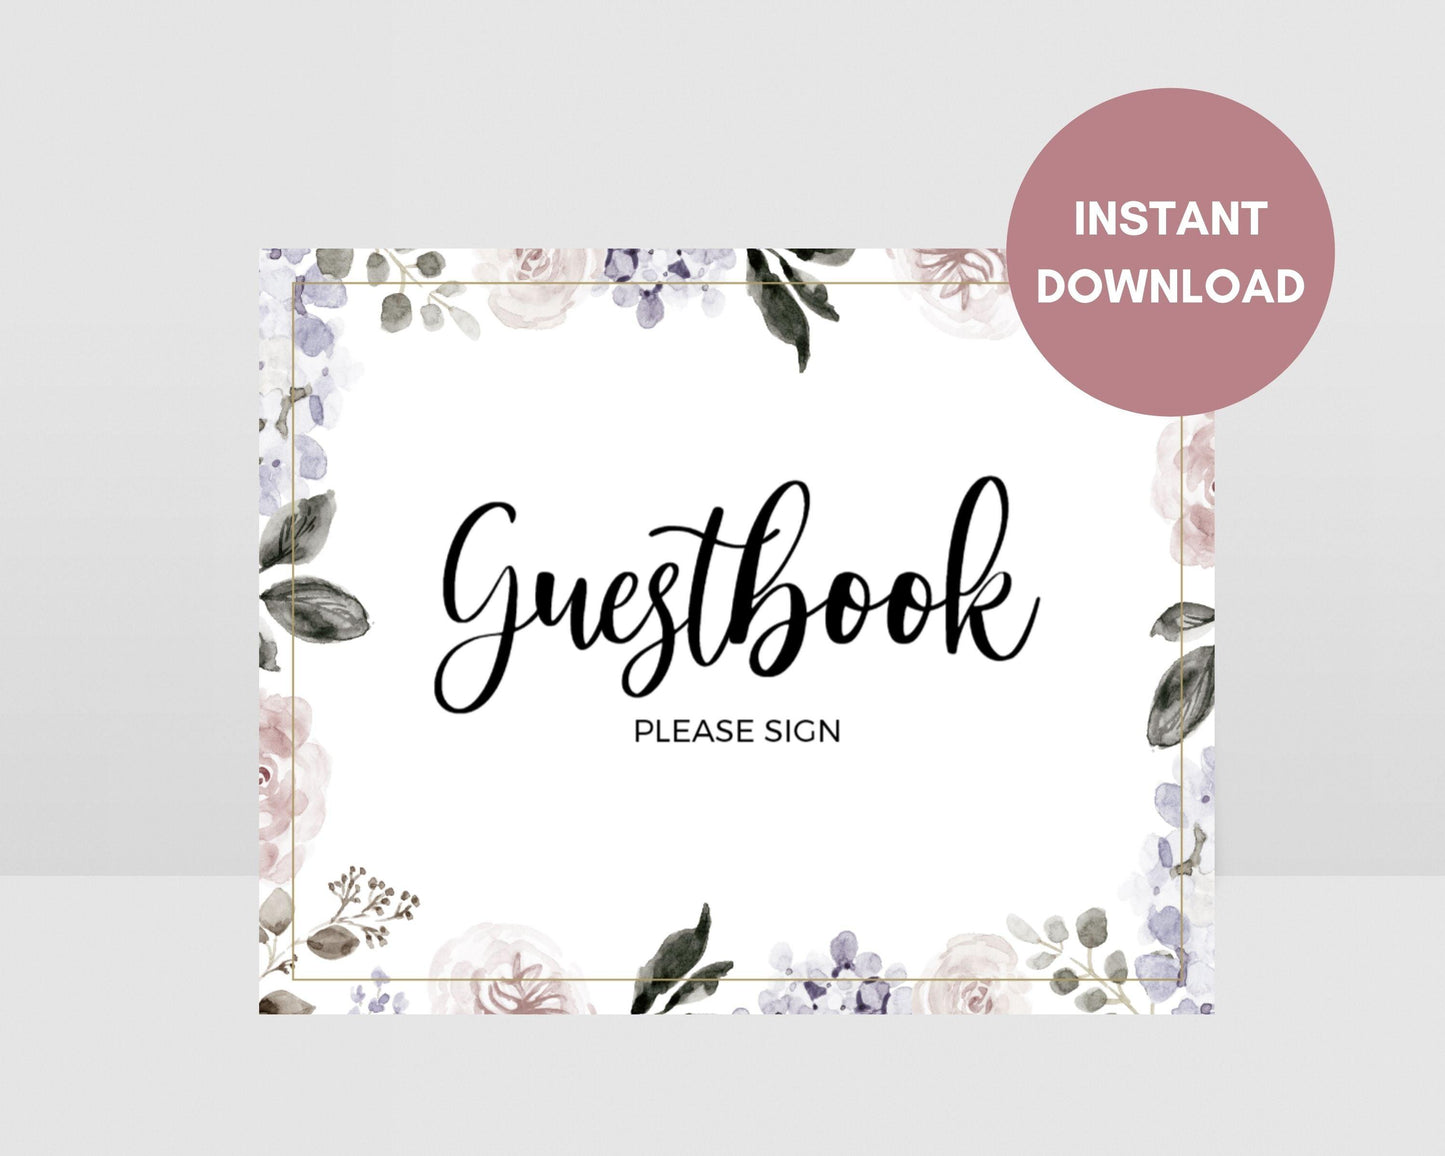 Printable Vintage Floral Wedding Guestbook Sign, Instant Download, Printable Wedding Guestbook Sign